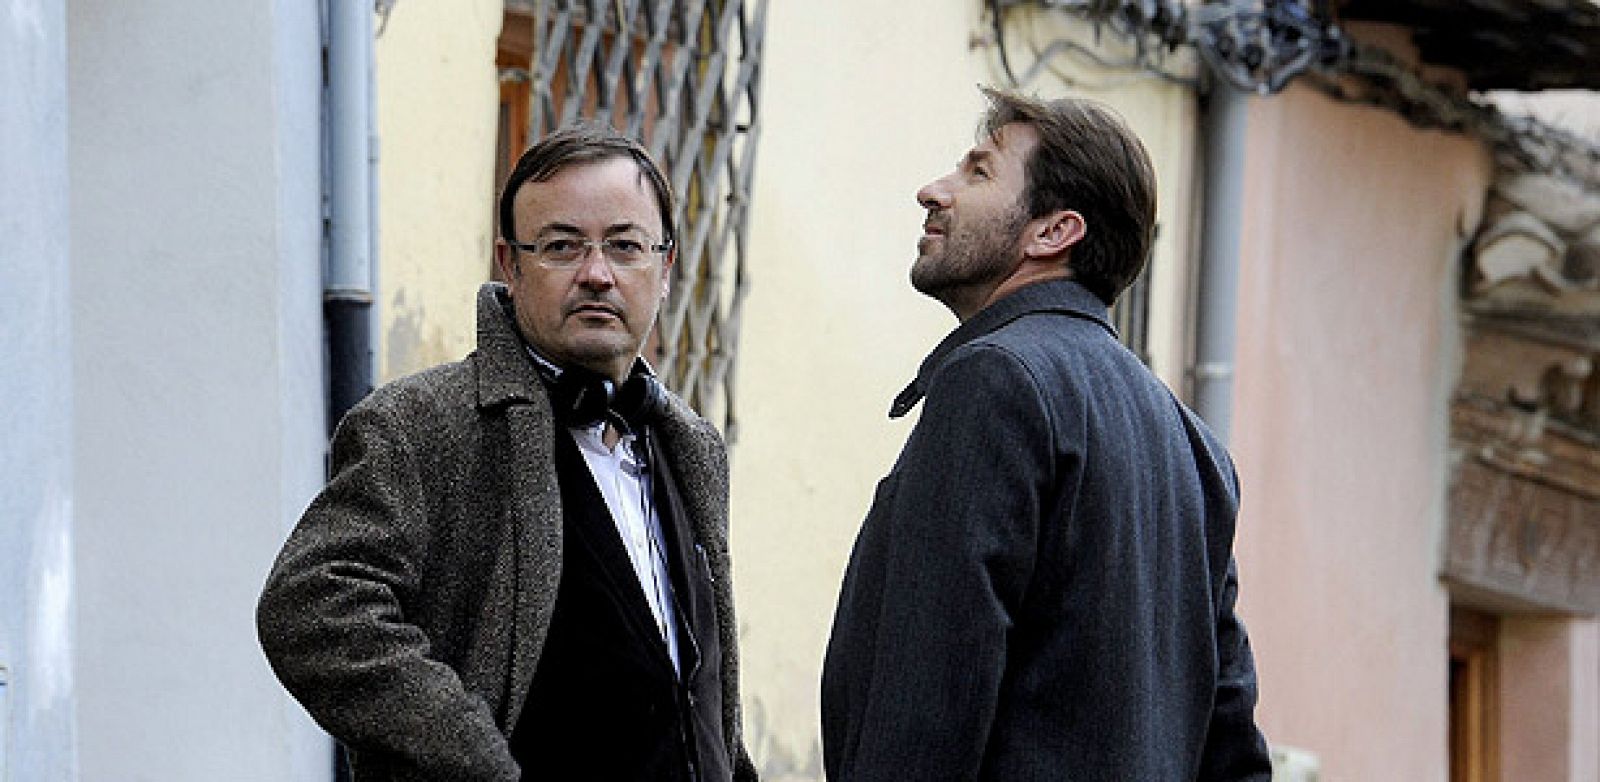 El director Manuel Martín (i) junto al actor Antonio de la Torre, en la Carrera del Darro, en el bajo Albaicín de Granada, donde ha comenzado el rodaje de "Caníbal"